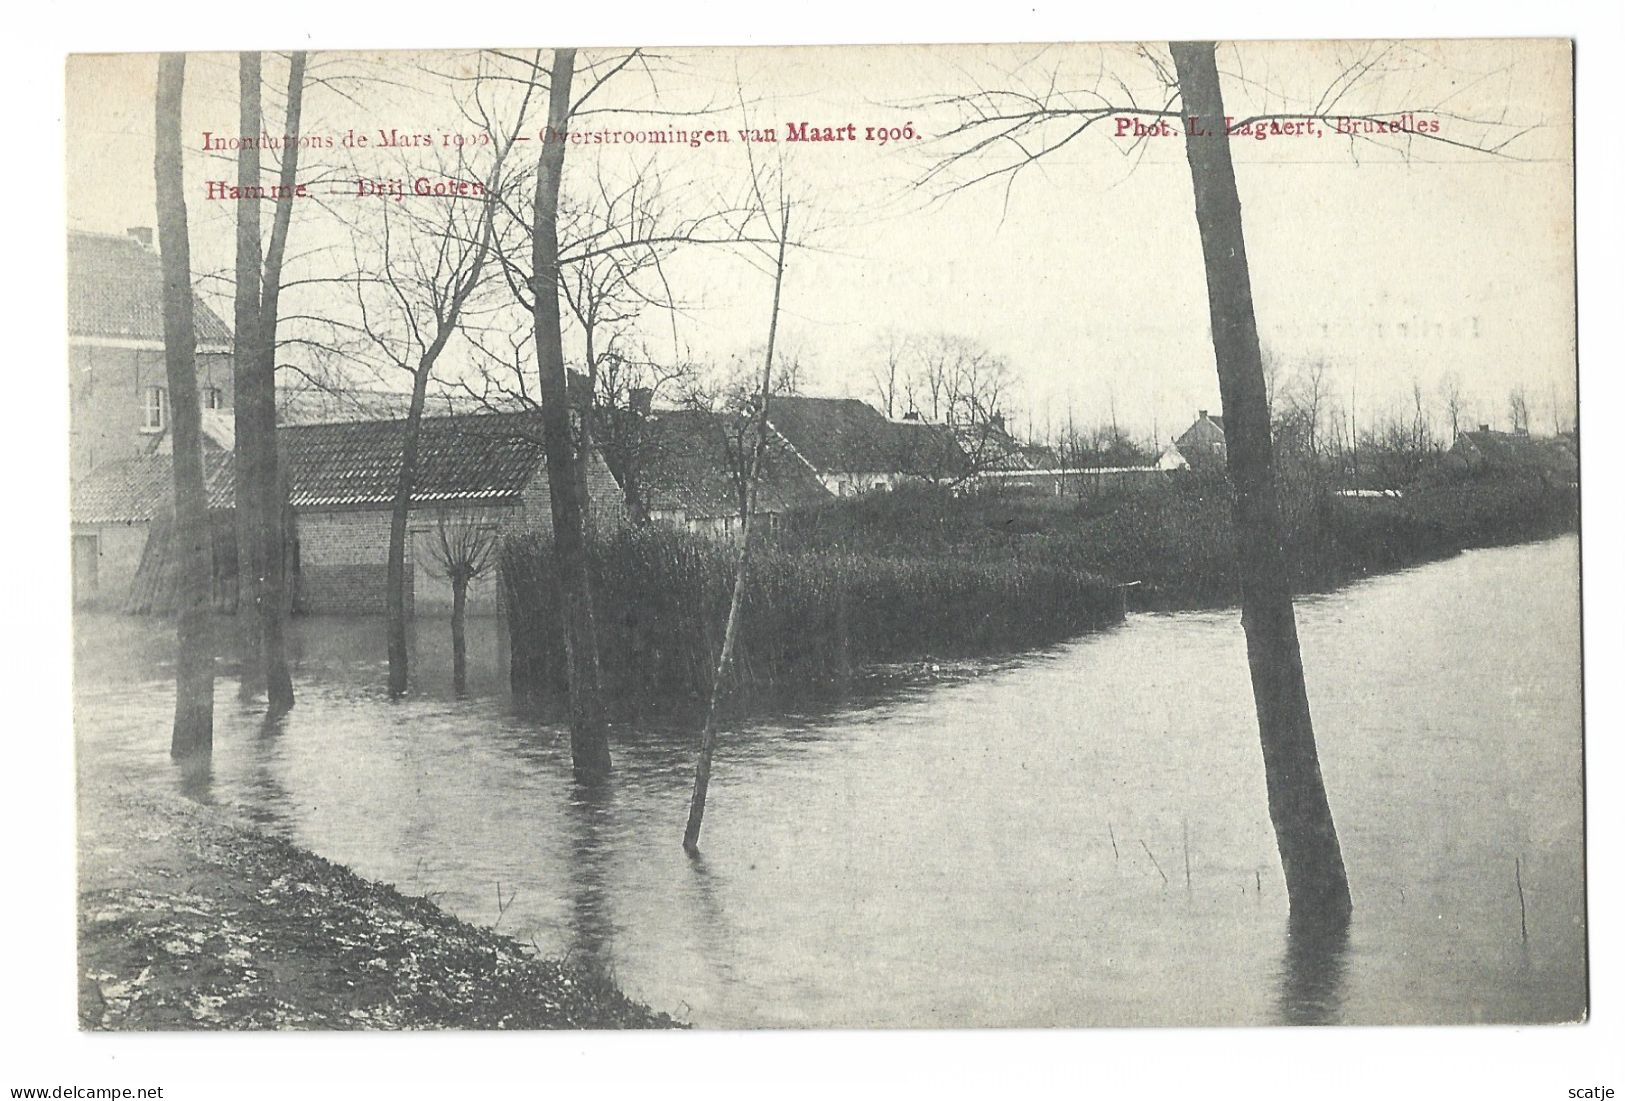 Hamme.   -   (Drij Goten).   Overstroming Van Maart 1906 - Hamme